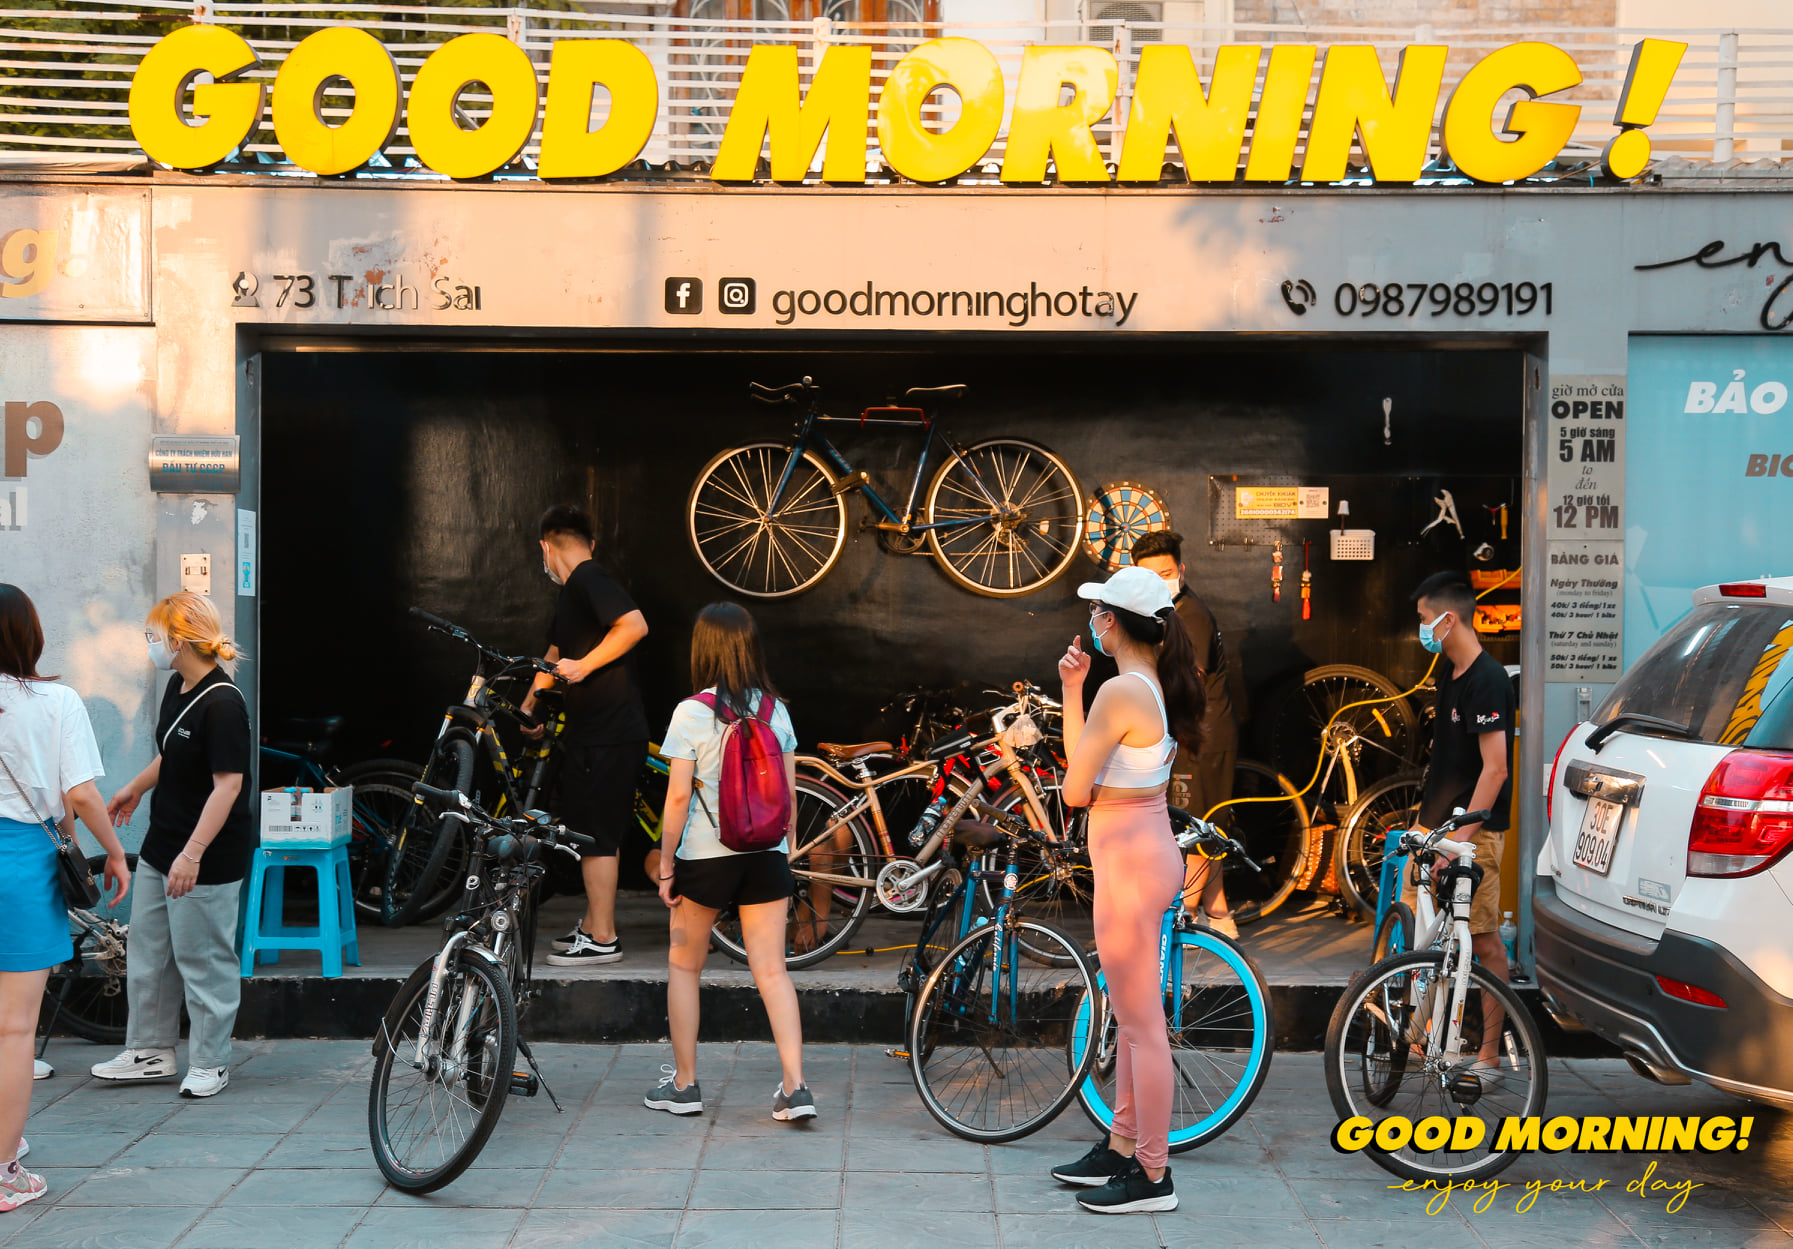 Good morning là một địa chỉ thuê xe đạp đáng tham khảo